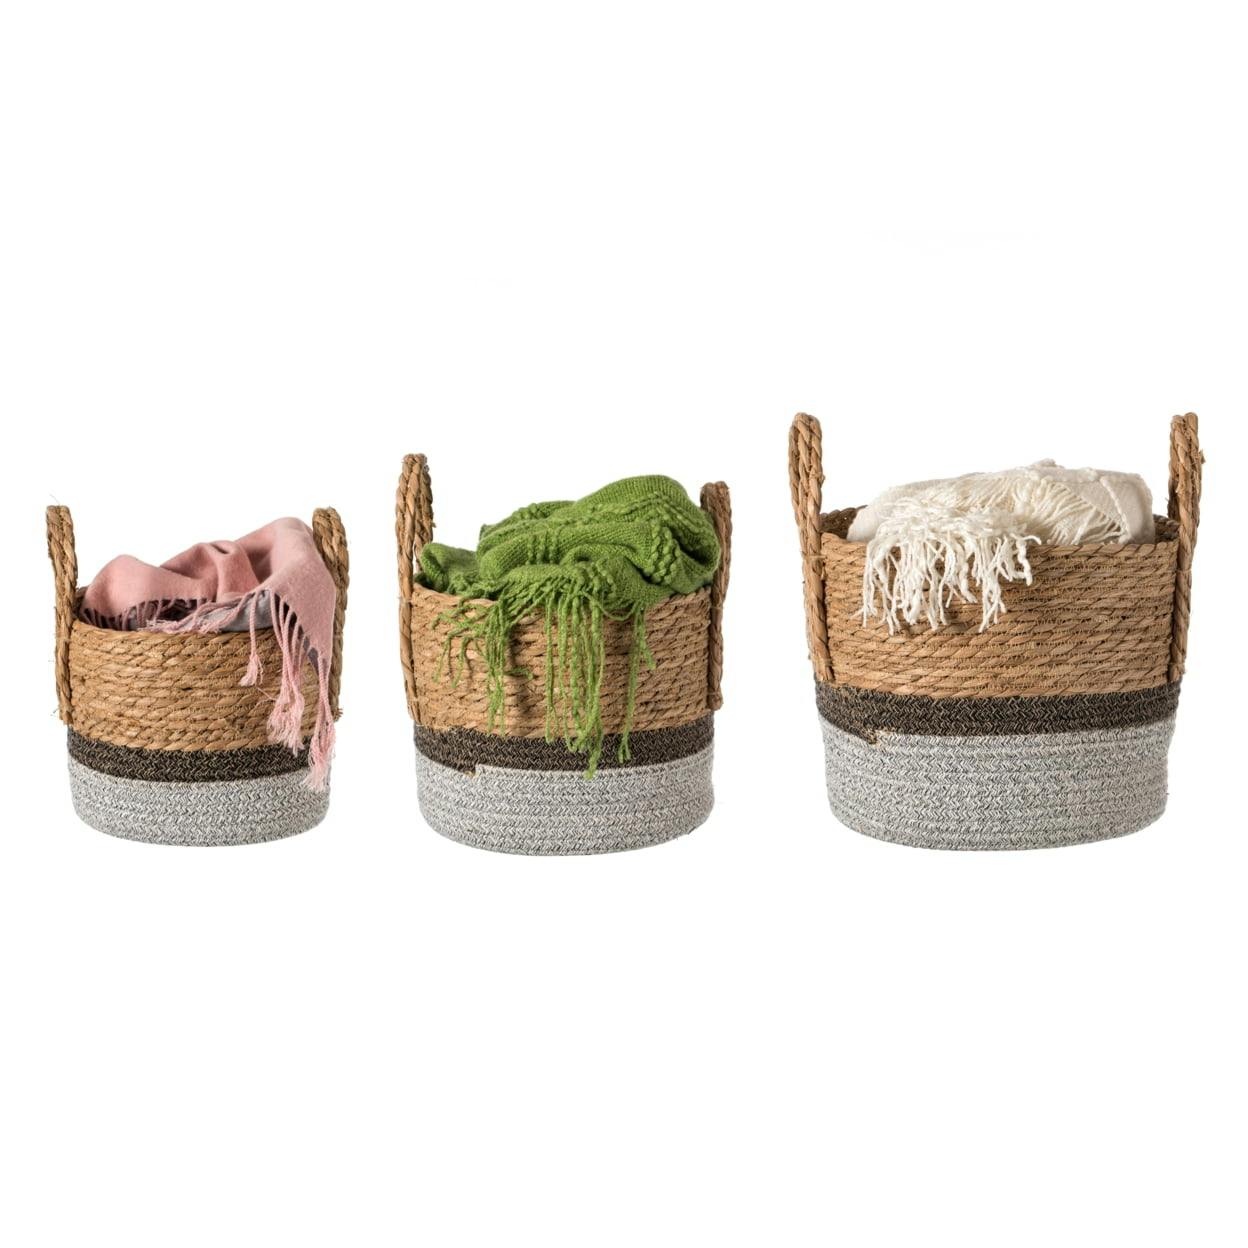 Round Woven Straw Storage Basket Set with Handles, 19" x 13"